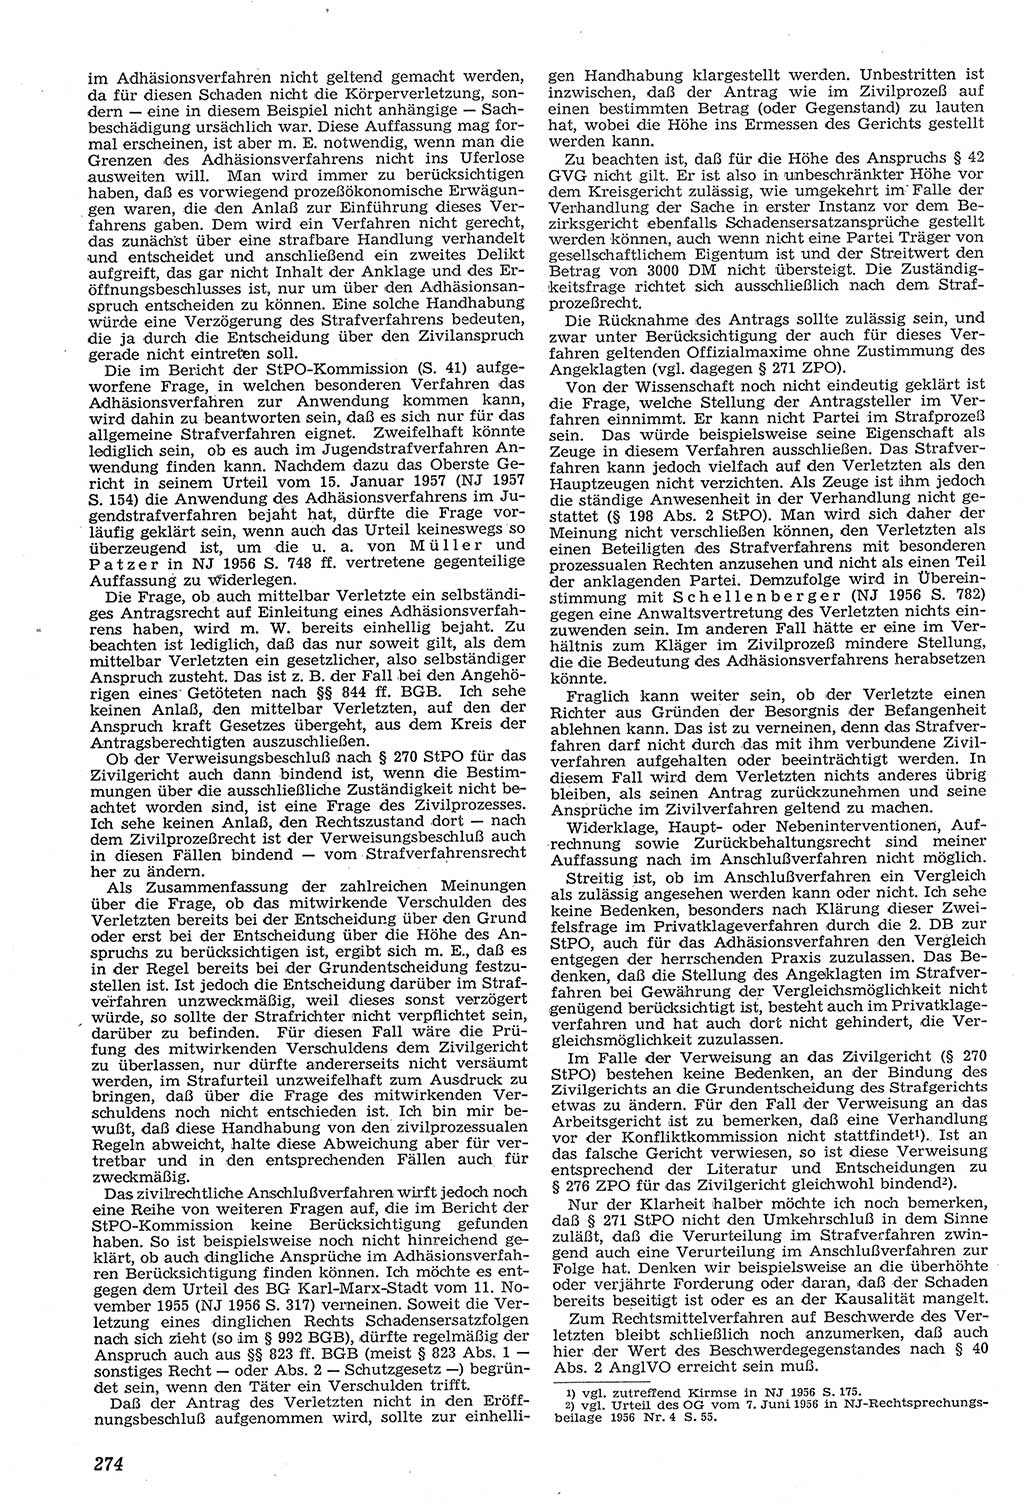 Neue Justiz (NJ), Zeitschrift für Recht und Rechtswissenschaft [Deutsche Demokratische Republik (DDR)], 11. Jahrgang 1957, Seite 274 (NJ DDR 1957, S. 274)